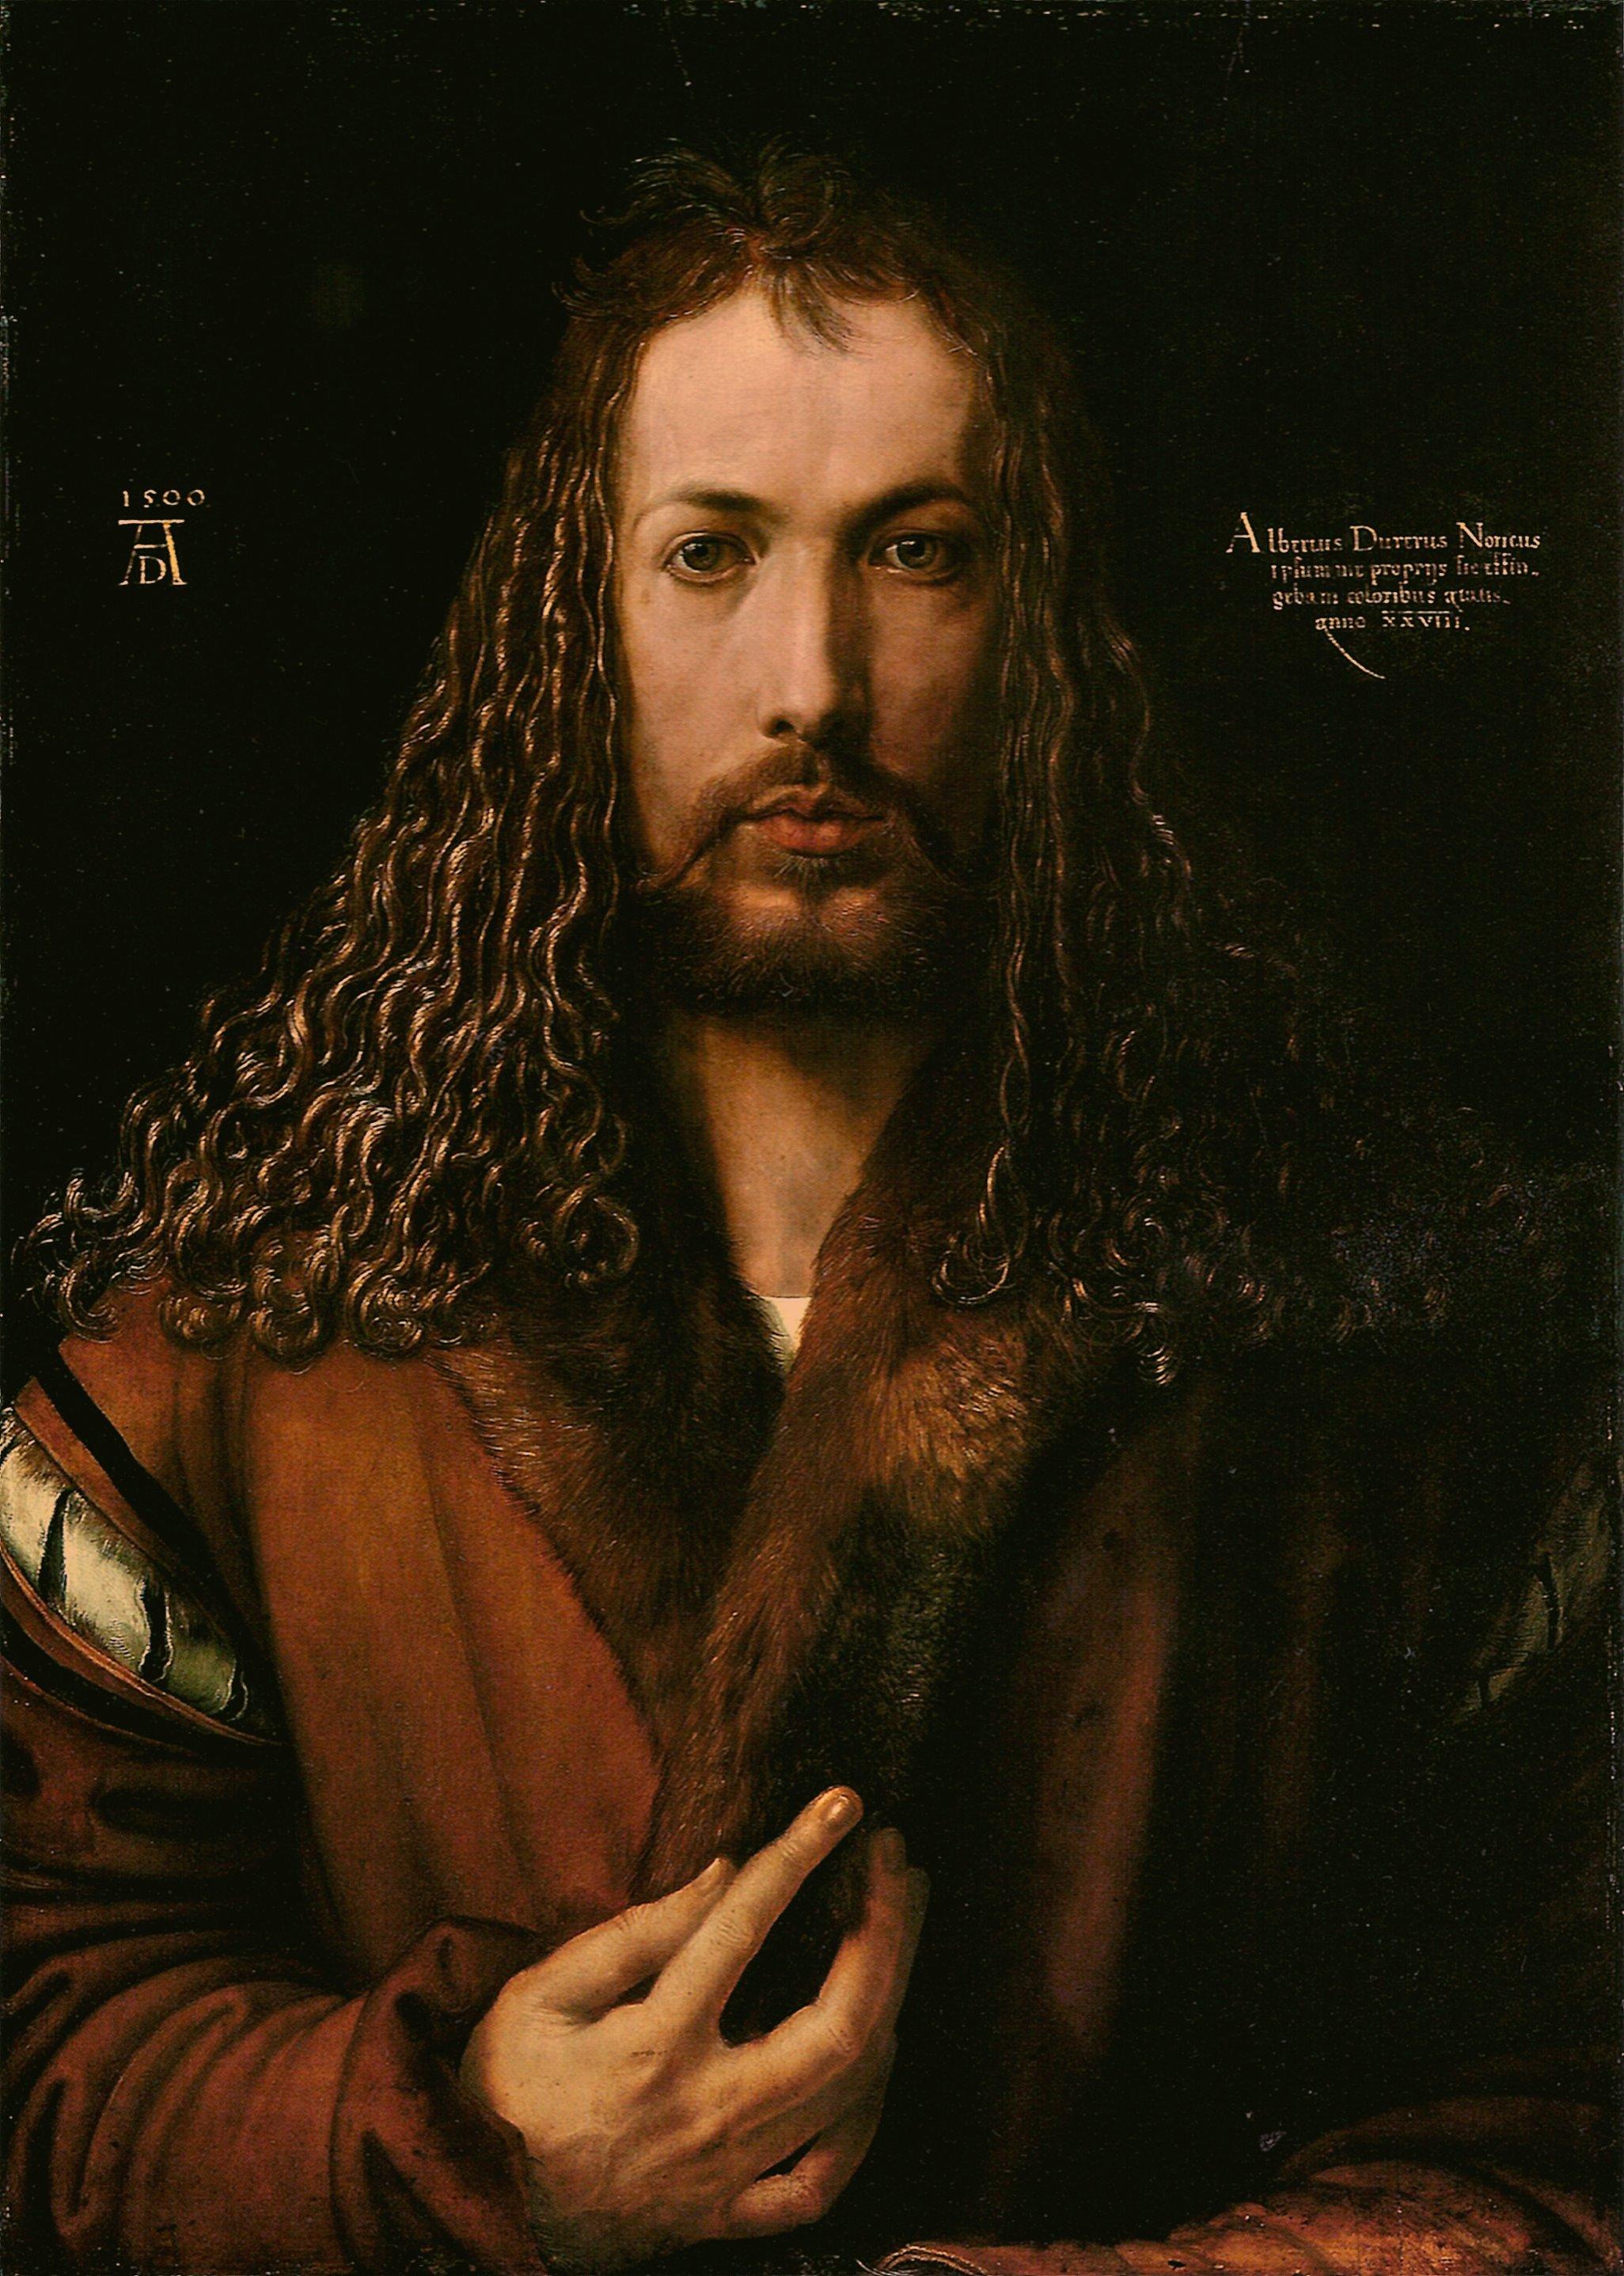 The ArtCurious Podcast Albrecht Dürer's "SelfPortrait" Art & Object